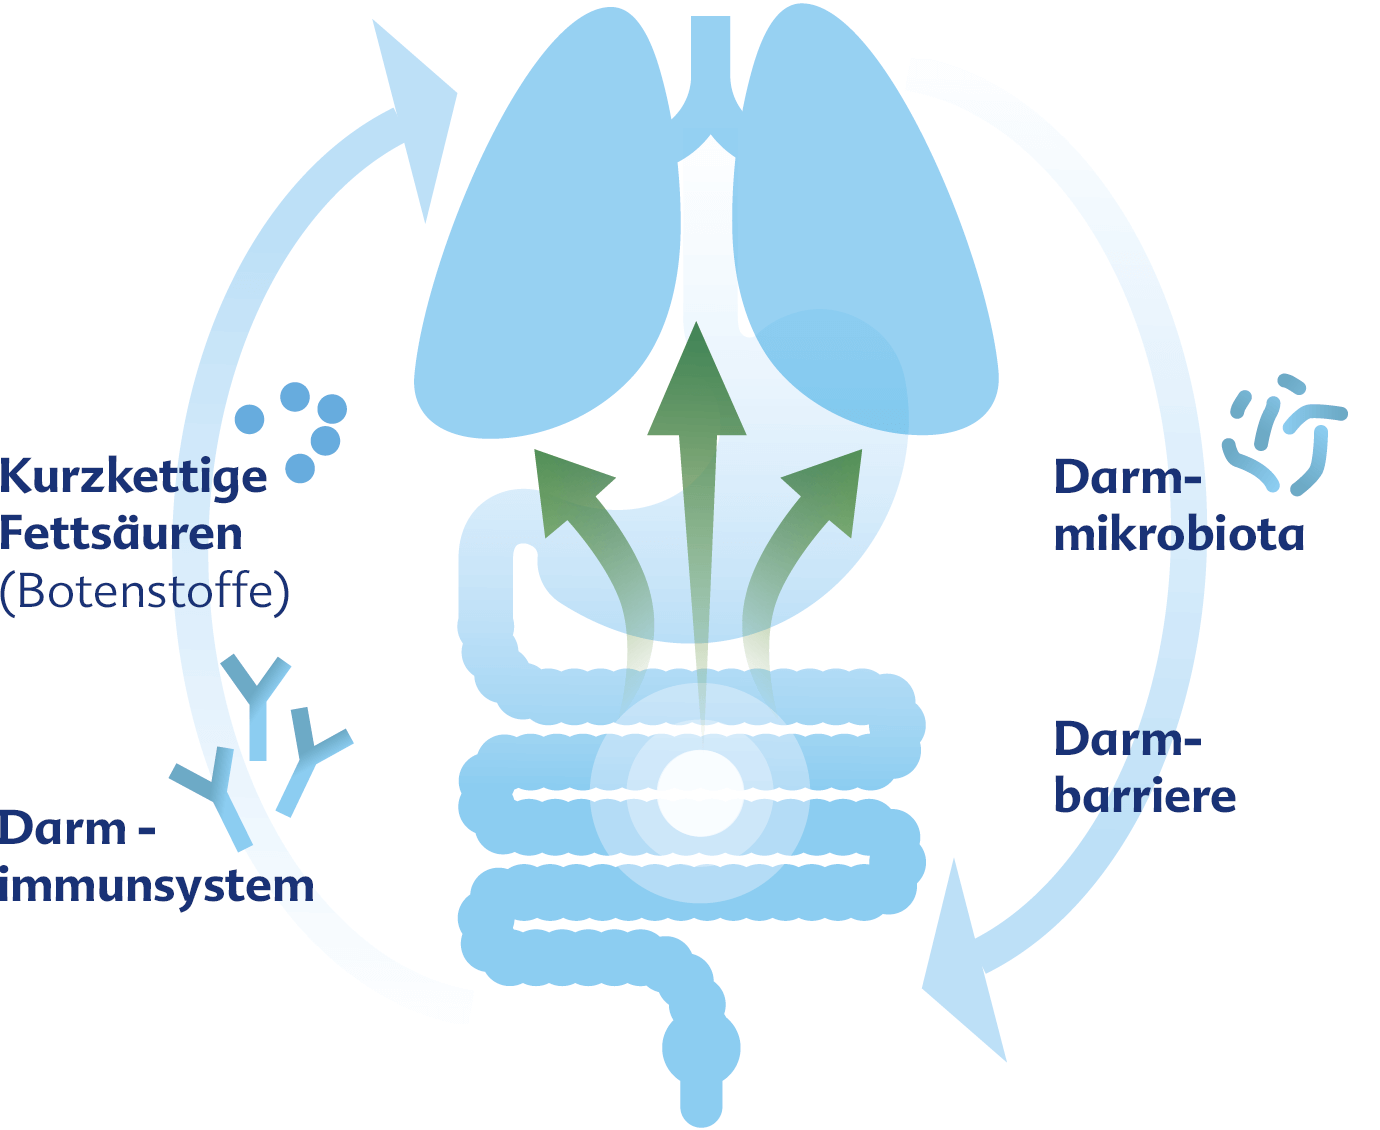 Darm und Lunge interagieren bidirektional über die Darmmikrobiota, deren Stoffwechselprodukte und das Immunsystem miteinander.1, 2